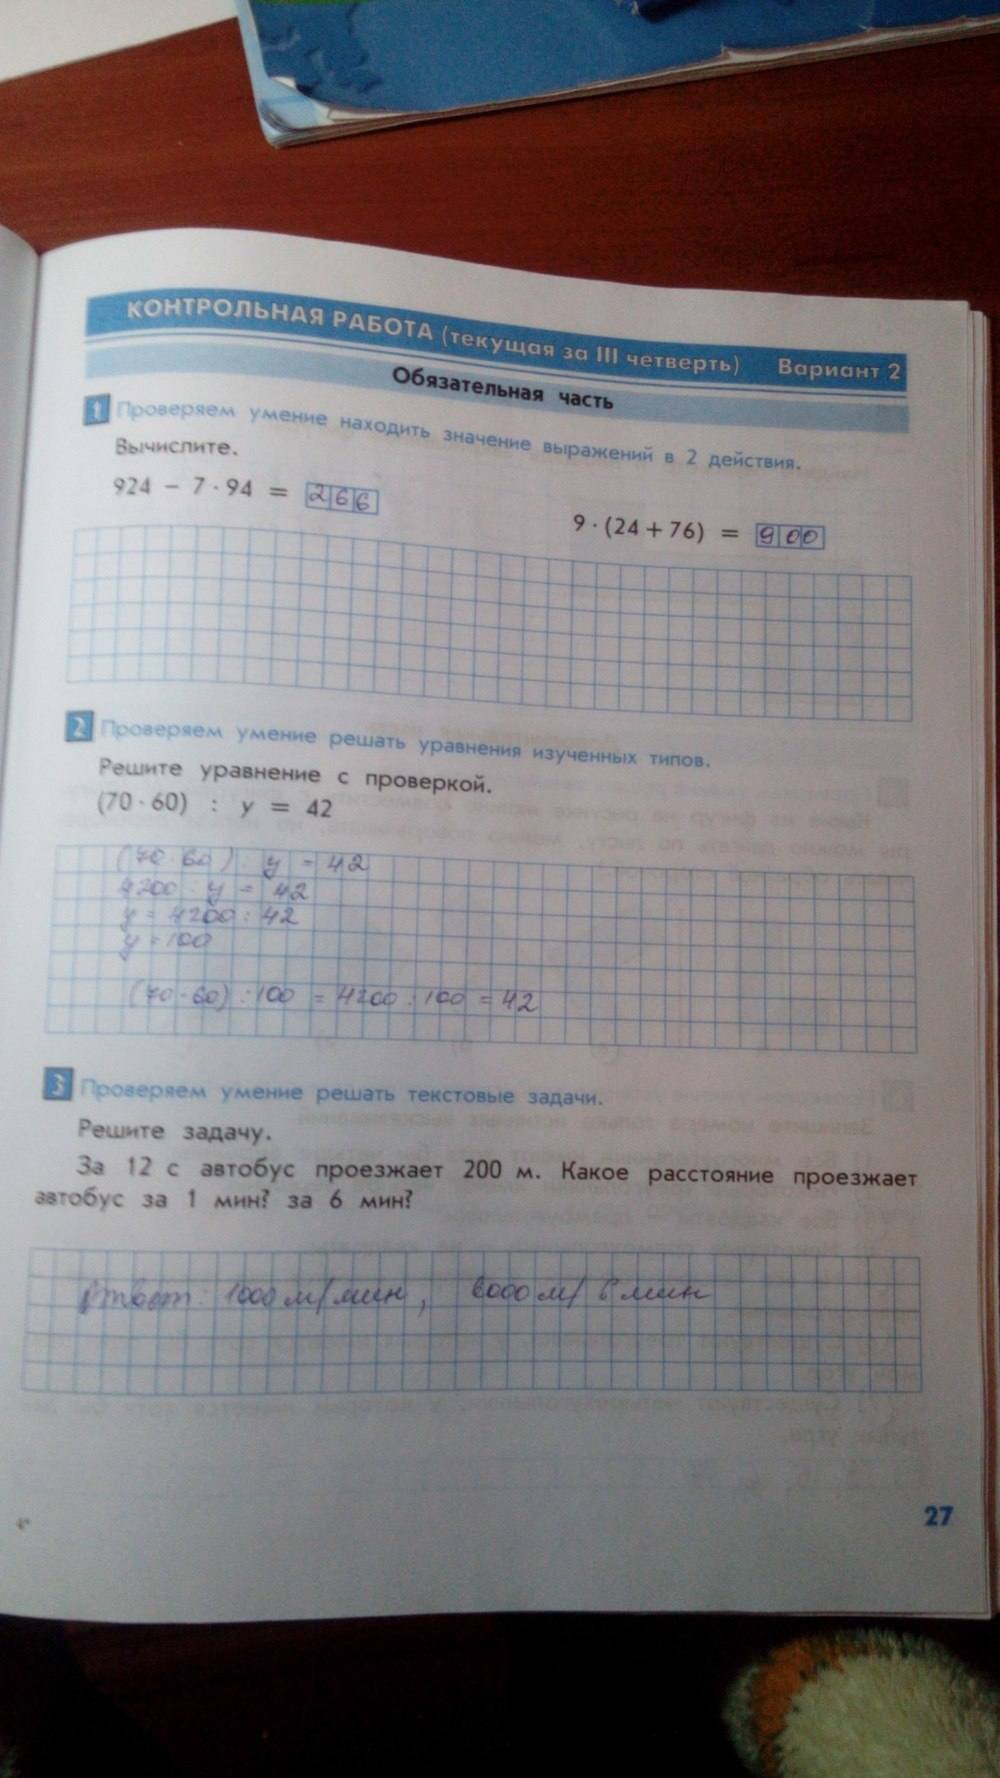 Тесты и контрольные работы, 4 класс, Козлова, Рубин, 2011, задание: стр. 27